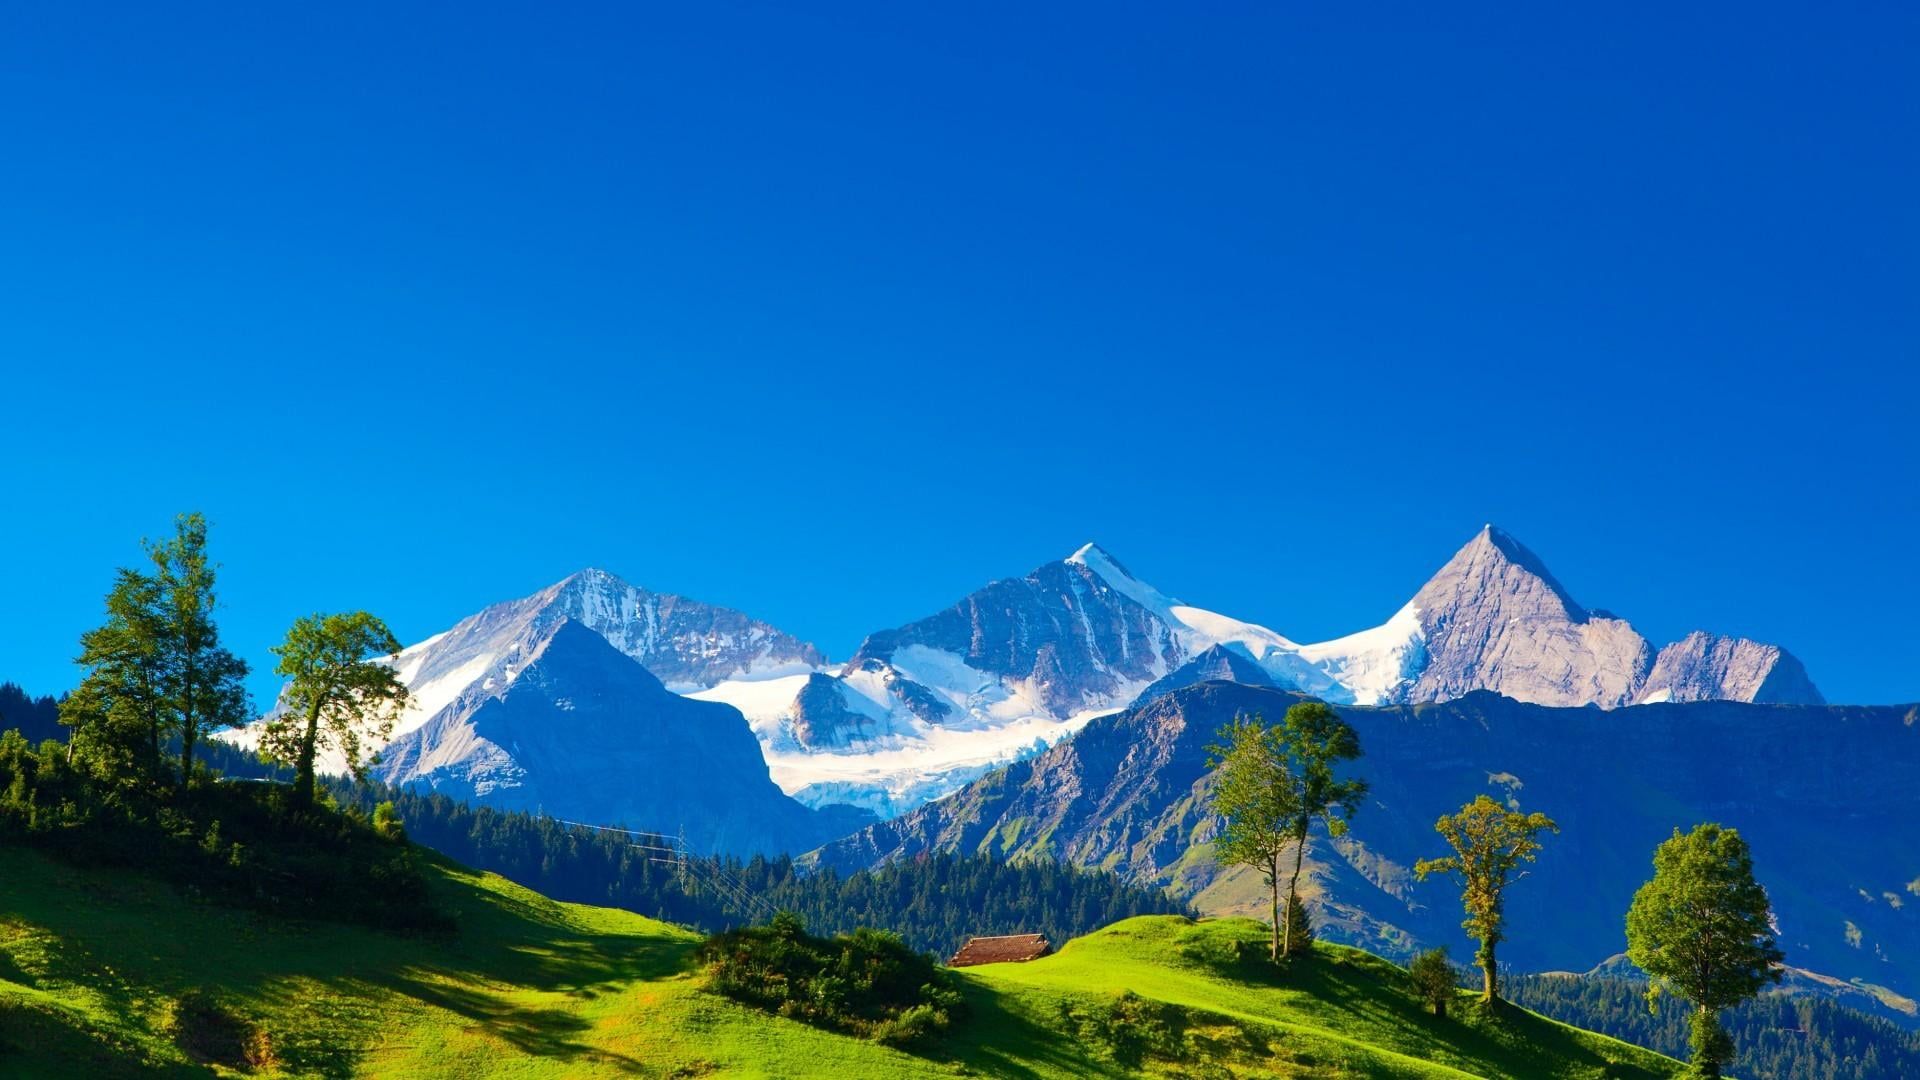 mountains #landscape #alps #switzerland swiss alps blue sky P # wallpaper #hdwallpaper #deskt. Landscape wallpaper, Switzerland wallpaper, Mountain landscape